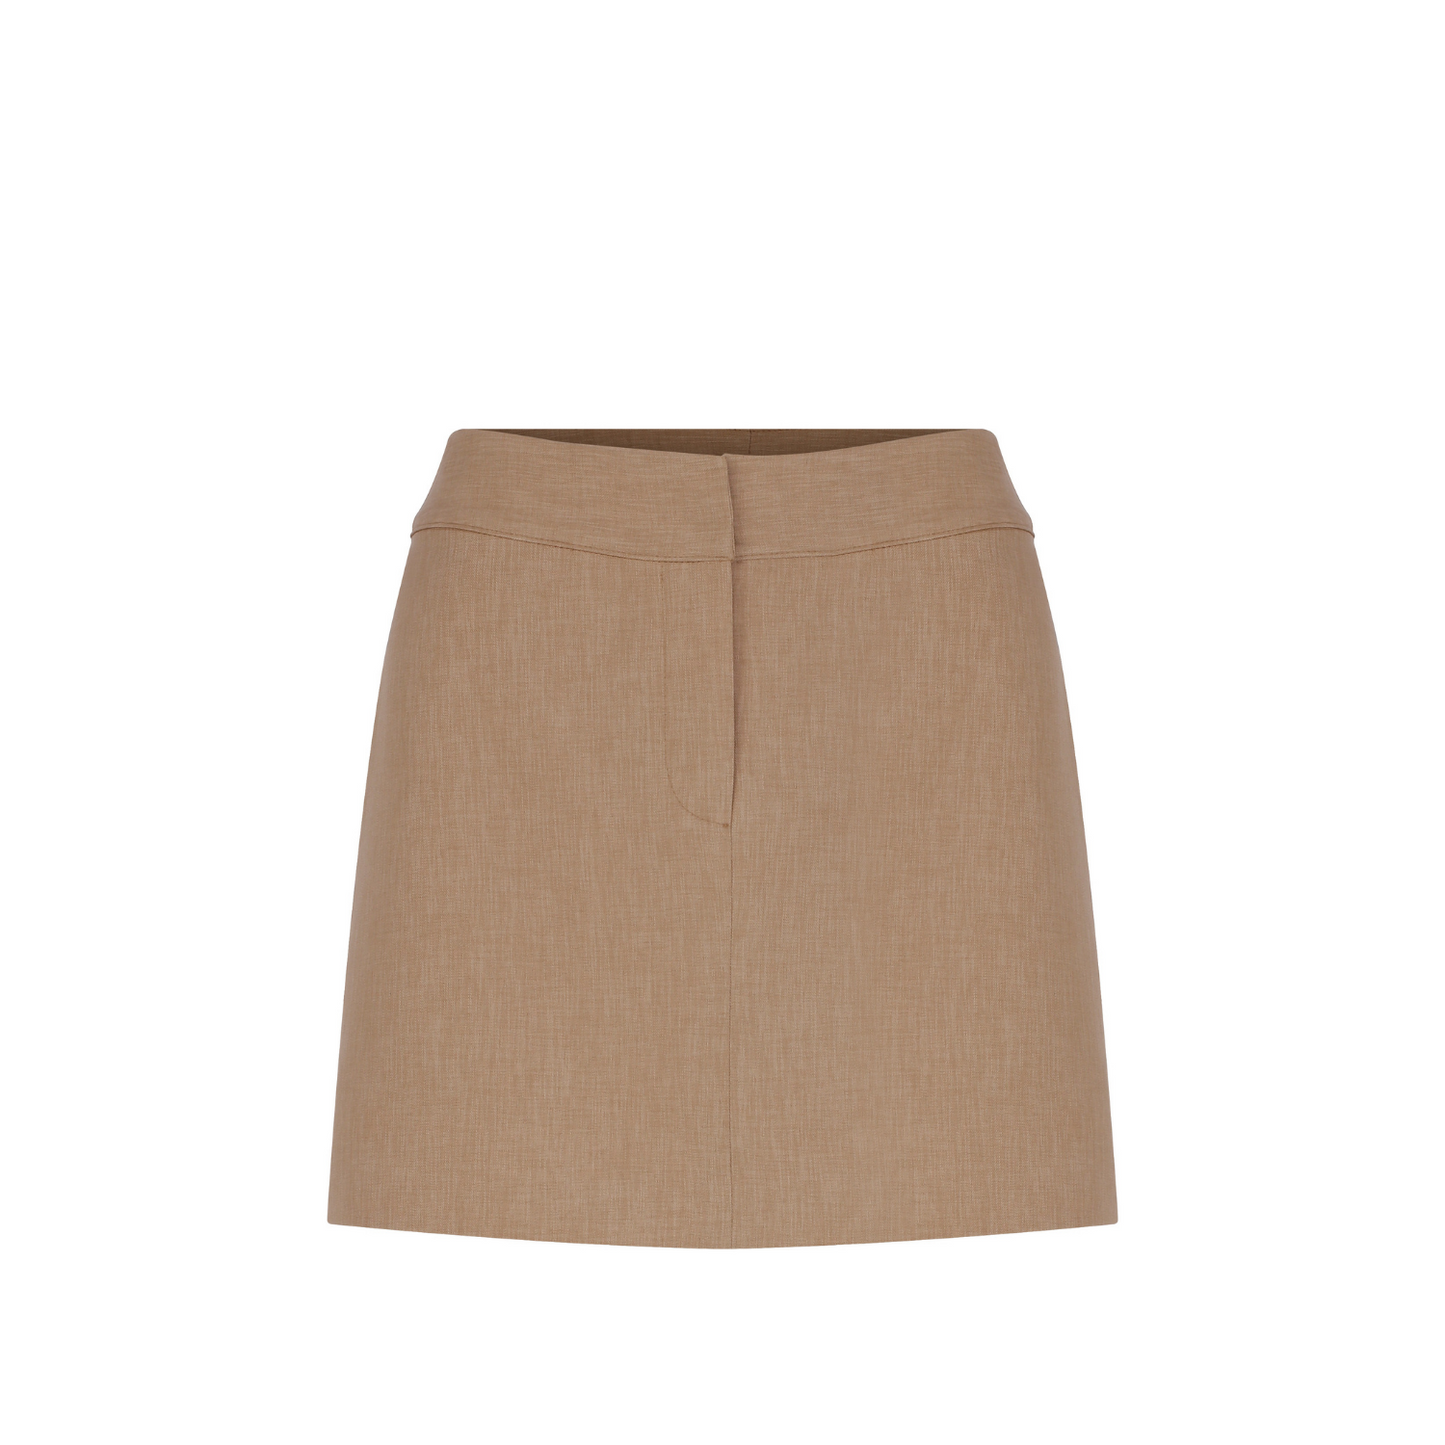 Marde A-Line Mini Skirt in Almond Buff